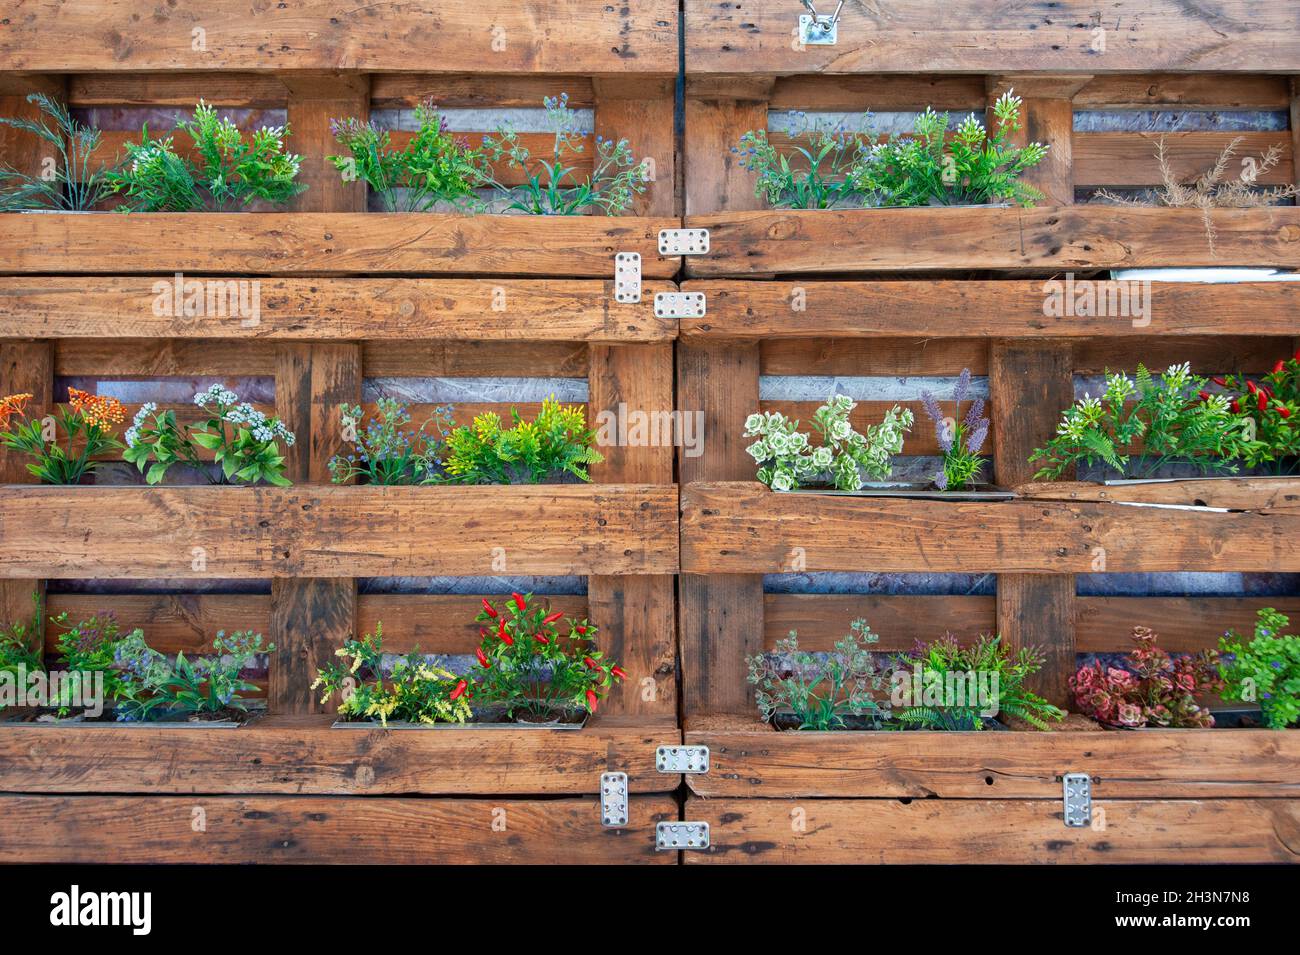 Palets de madera reciclada como maceta de flores, colgada en una pared  Fotografía de stock - Alamy